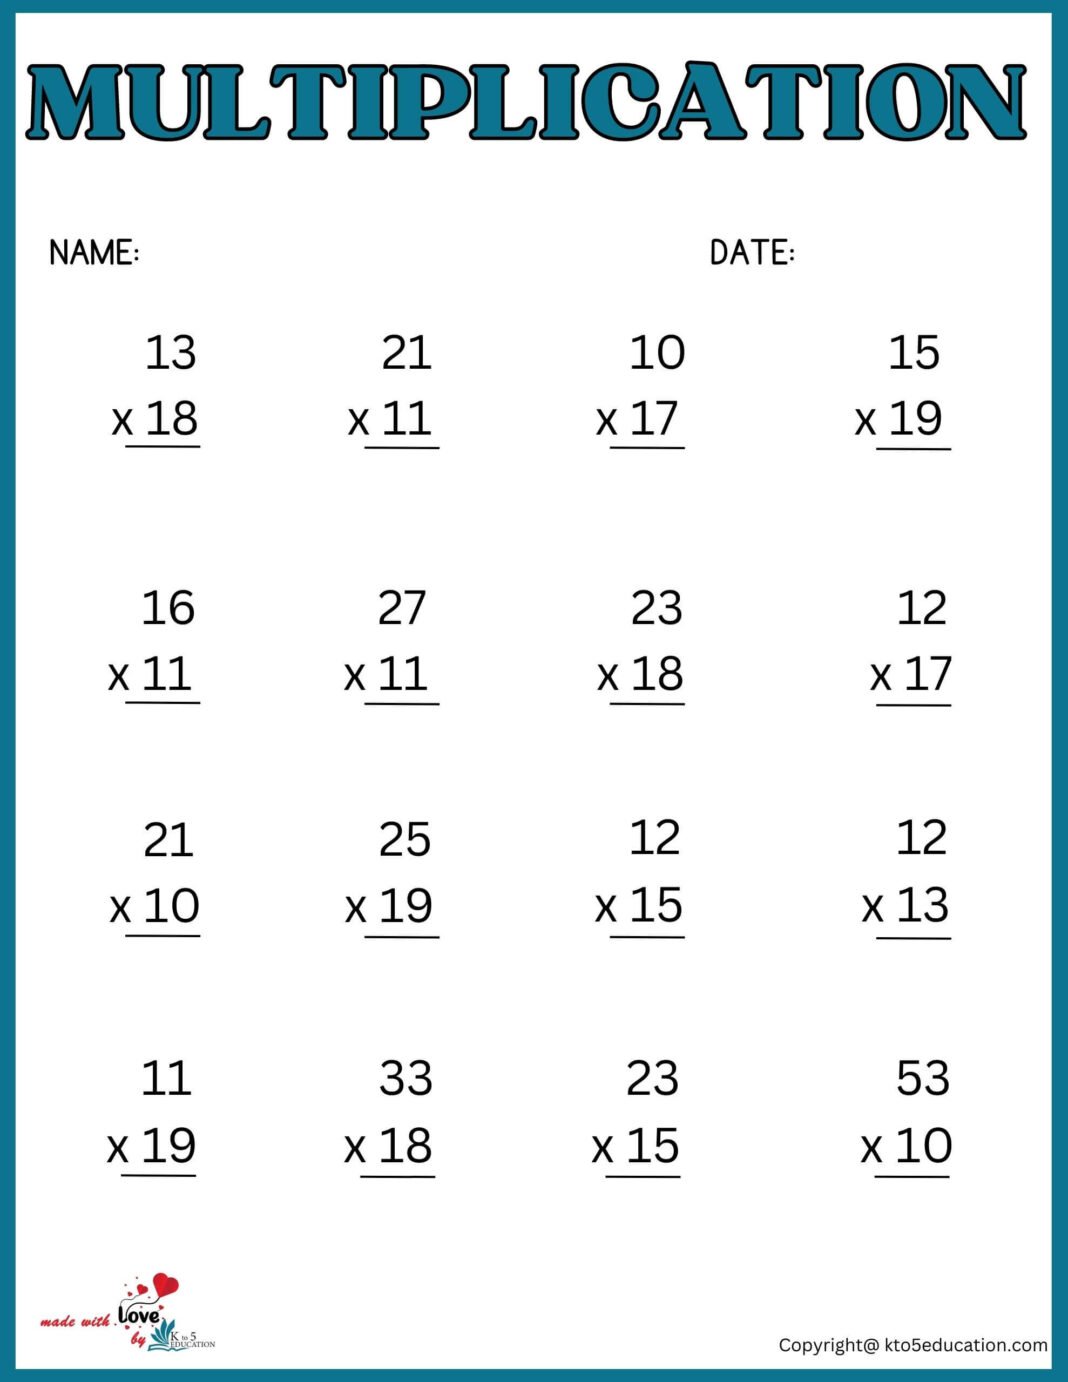 3rd-grades-multiplication-worksheet-free-download